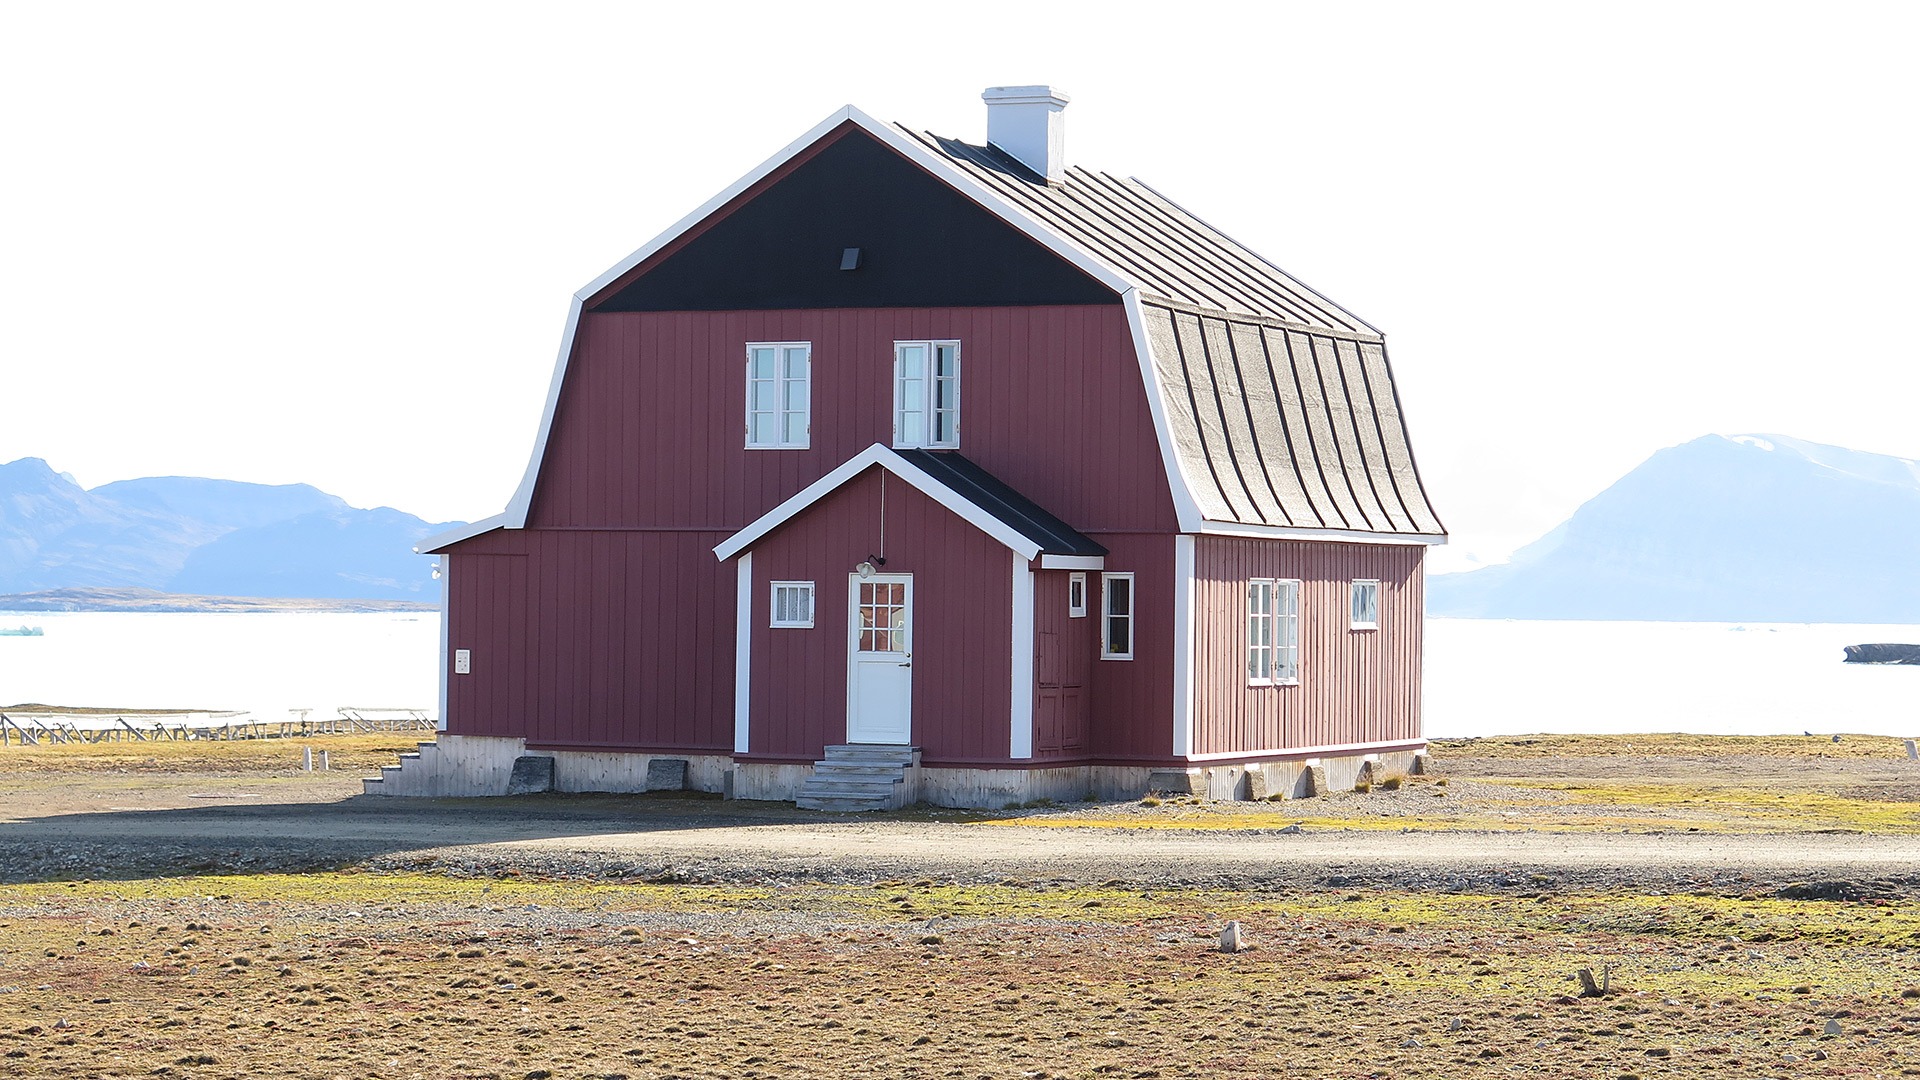 Direktørboligen i Ny-Ålesund som lå i utkanten av bebyggelsen var det flotteste huset på Svalbard i 1918. I dag er den mest kjent som «Amundsenvillaen» ettersom Roald Amundsen bodde her i perioder. Senere har det også vært bar leiligheter sykestue og legekontor her. Foto: Siri Hagen Riksantikvaren